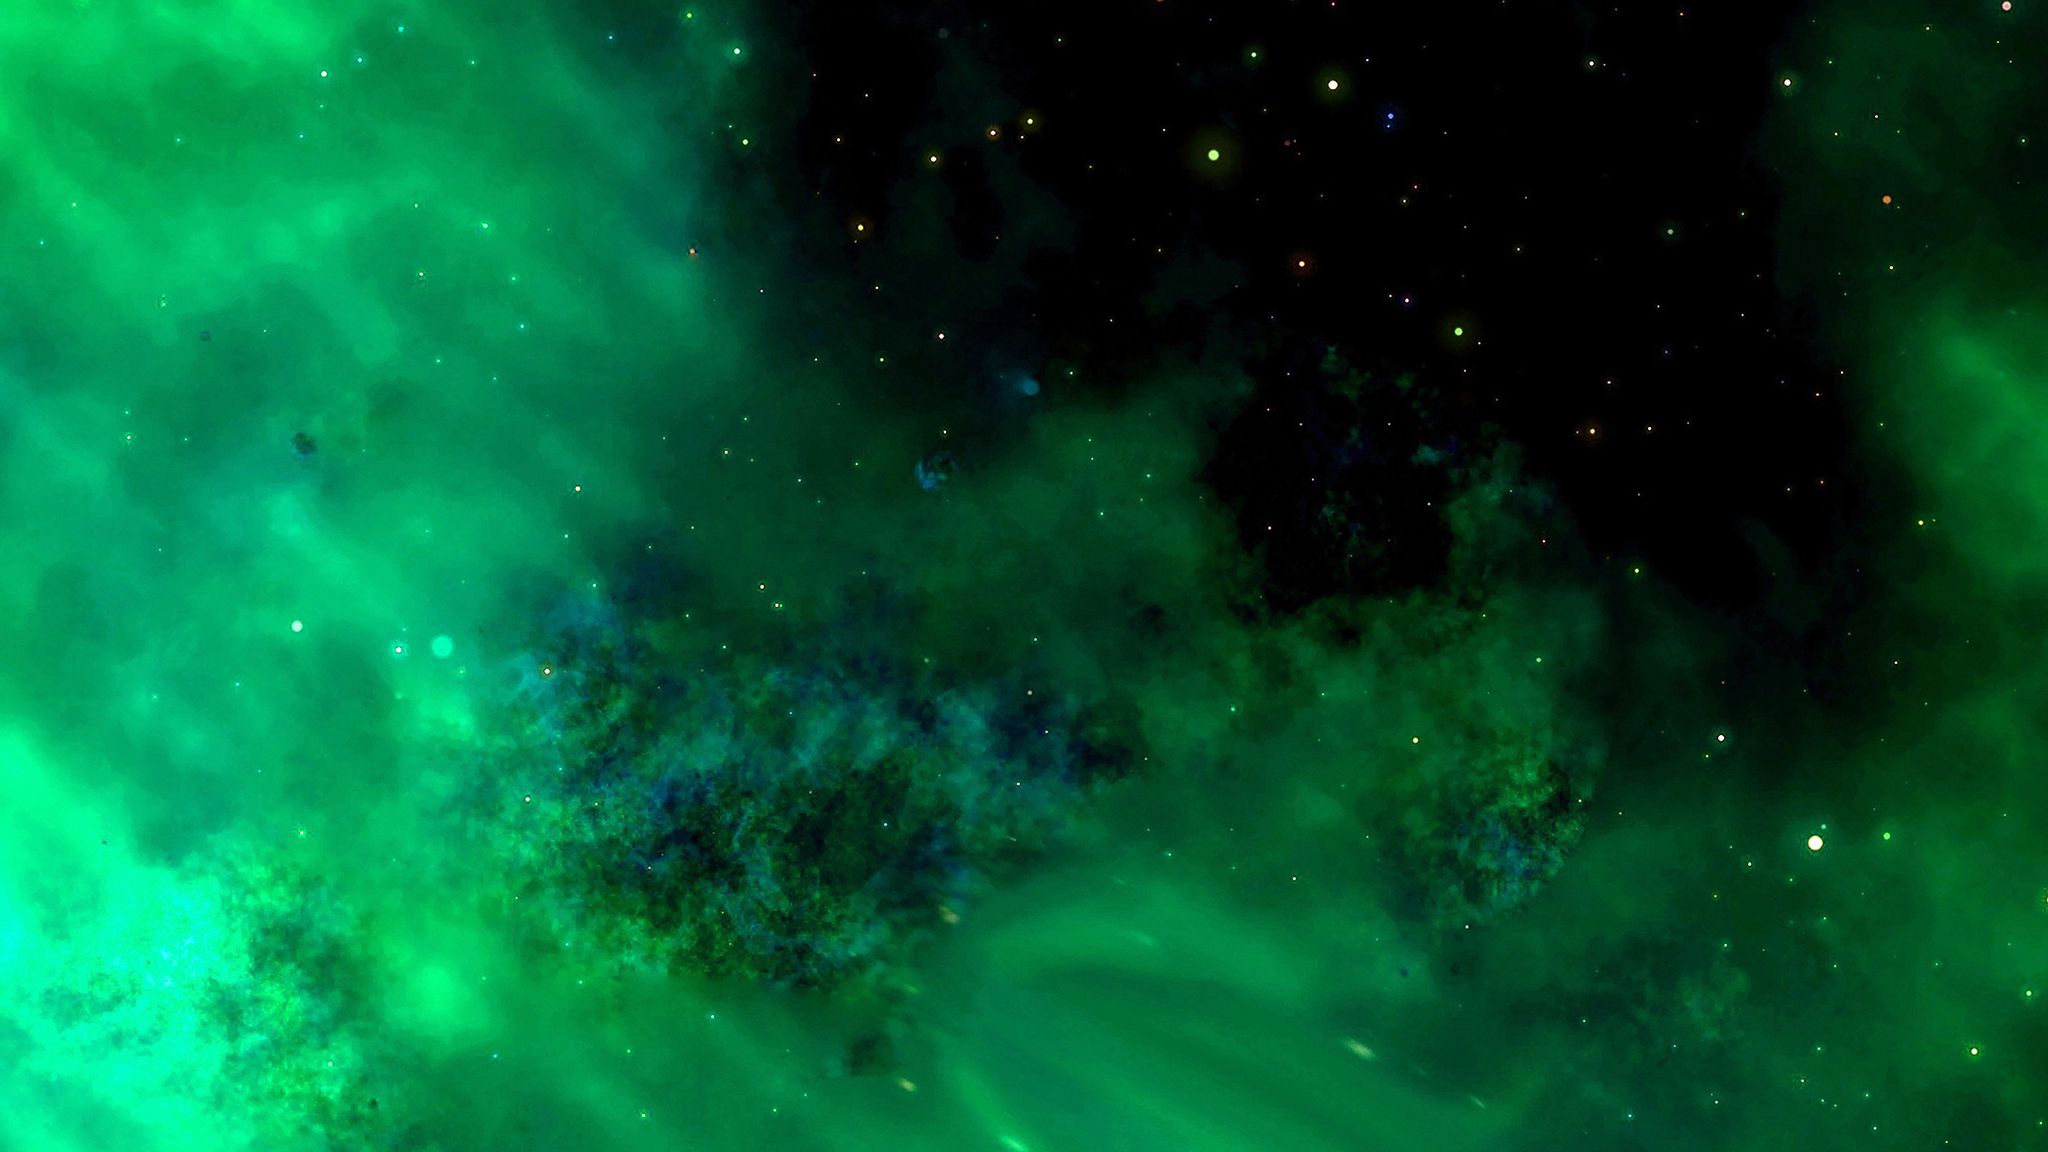 Hình nền vũ trụ, sao, galaxi màu xanh lá cây là một sự kết hợp hoàn hảo giữa vẻ đẹp và sự kỳ vĩ của không gian. Với hình ảnh chụp được từ các thiên hà, bạn có thể chiêm ngưỡng một thế giới bất tận và sẽ cảm thấy rộn ràng trong lòng.